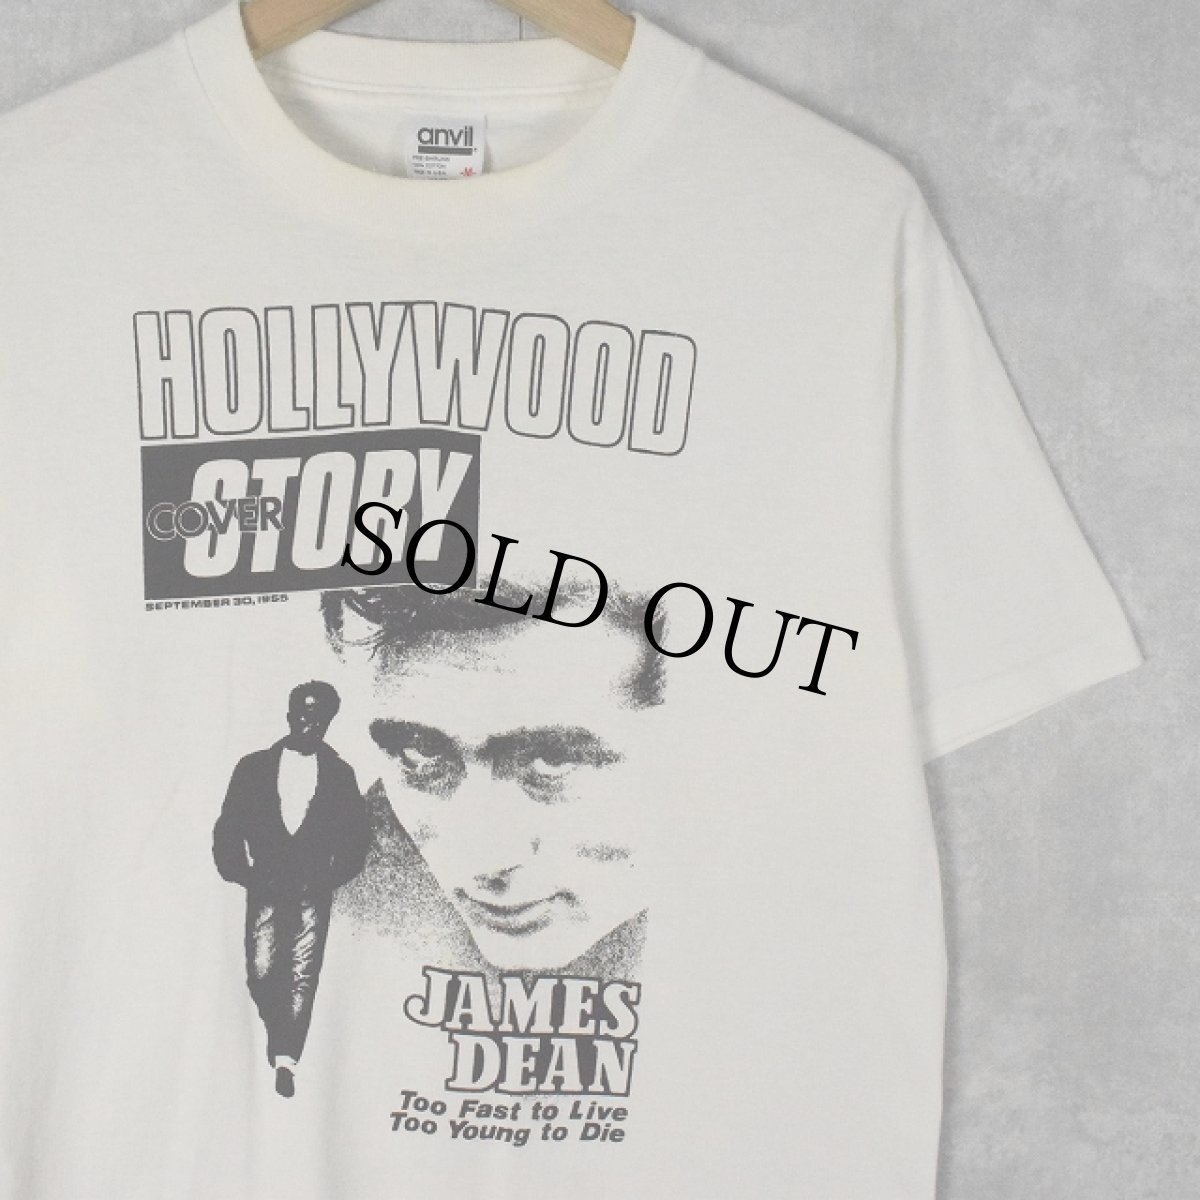 画像1: 90's JAMES DEAN USA製 "HOLLYWOOD COVER STORY" ハリウッドスタープリントTシャツ M (1)